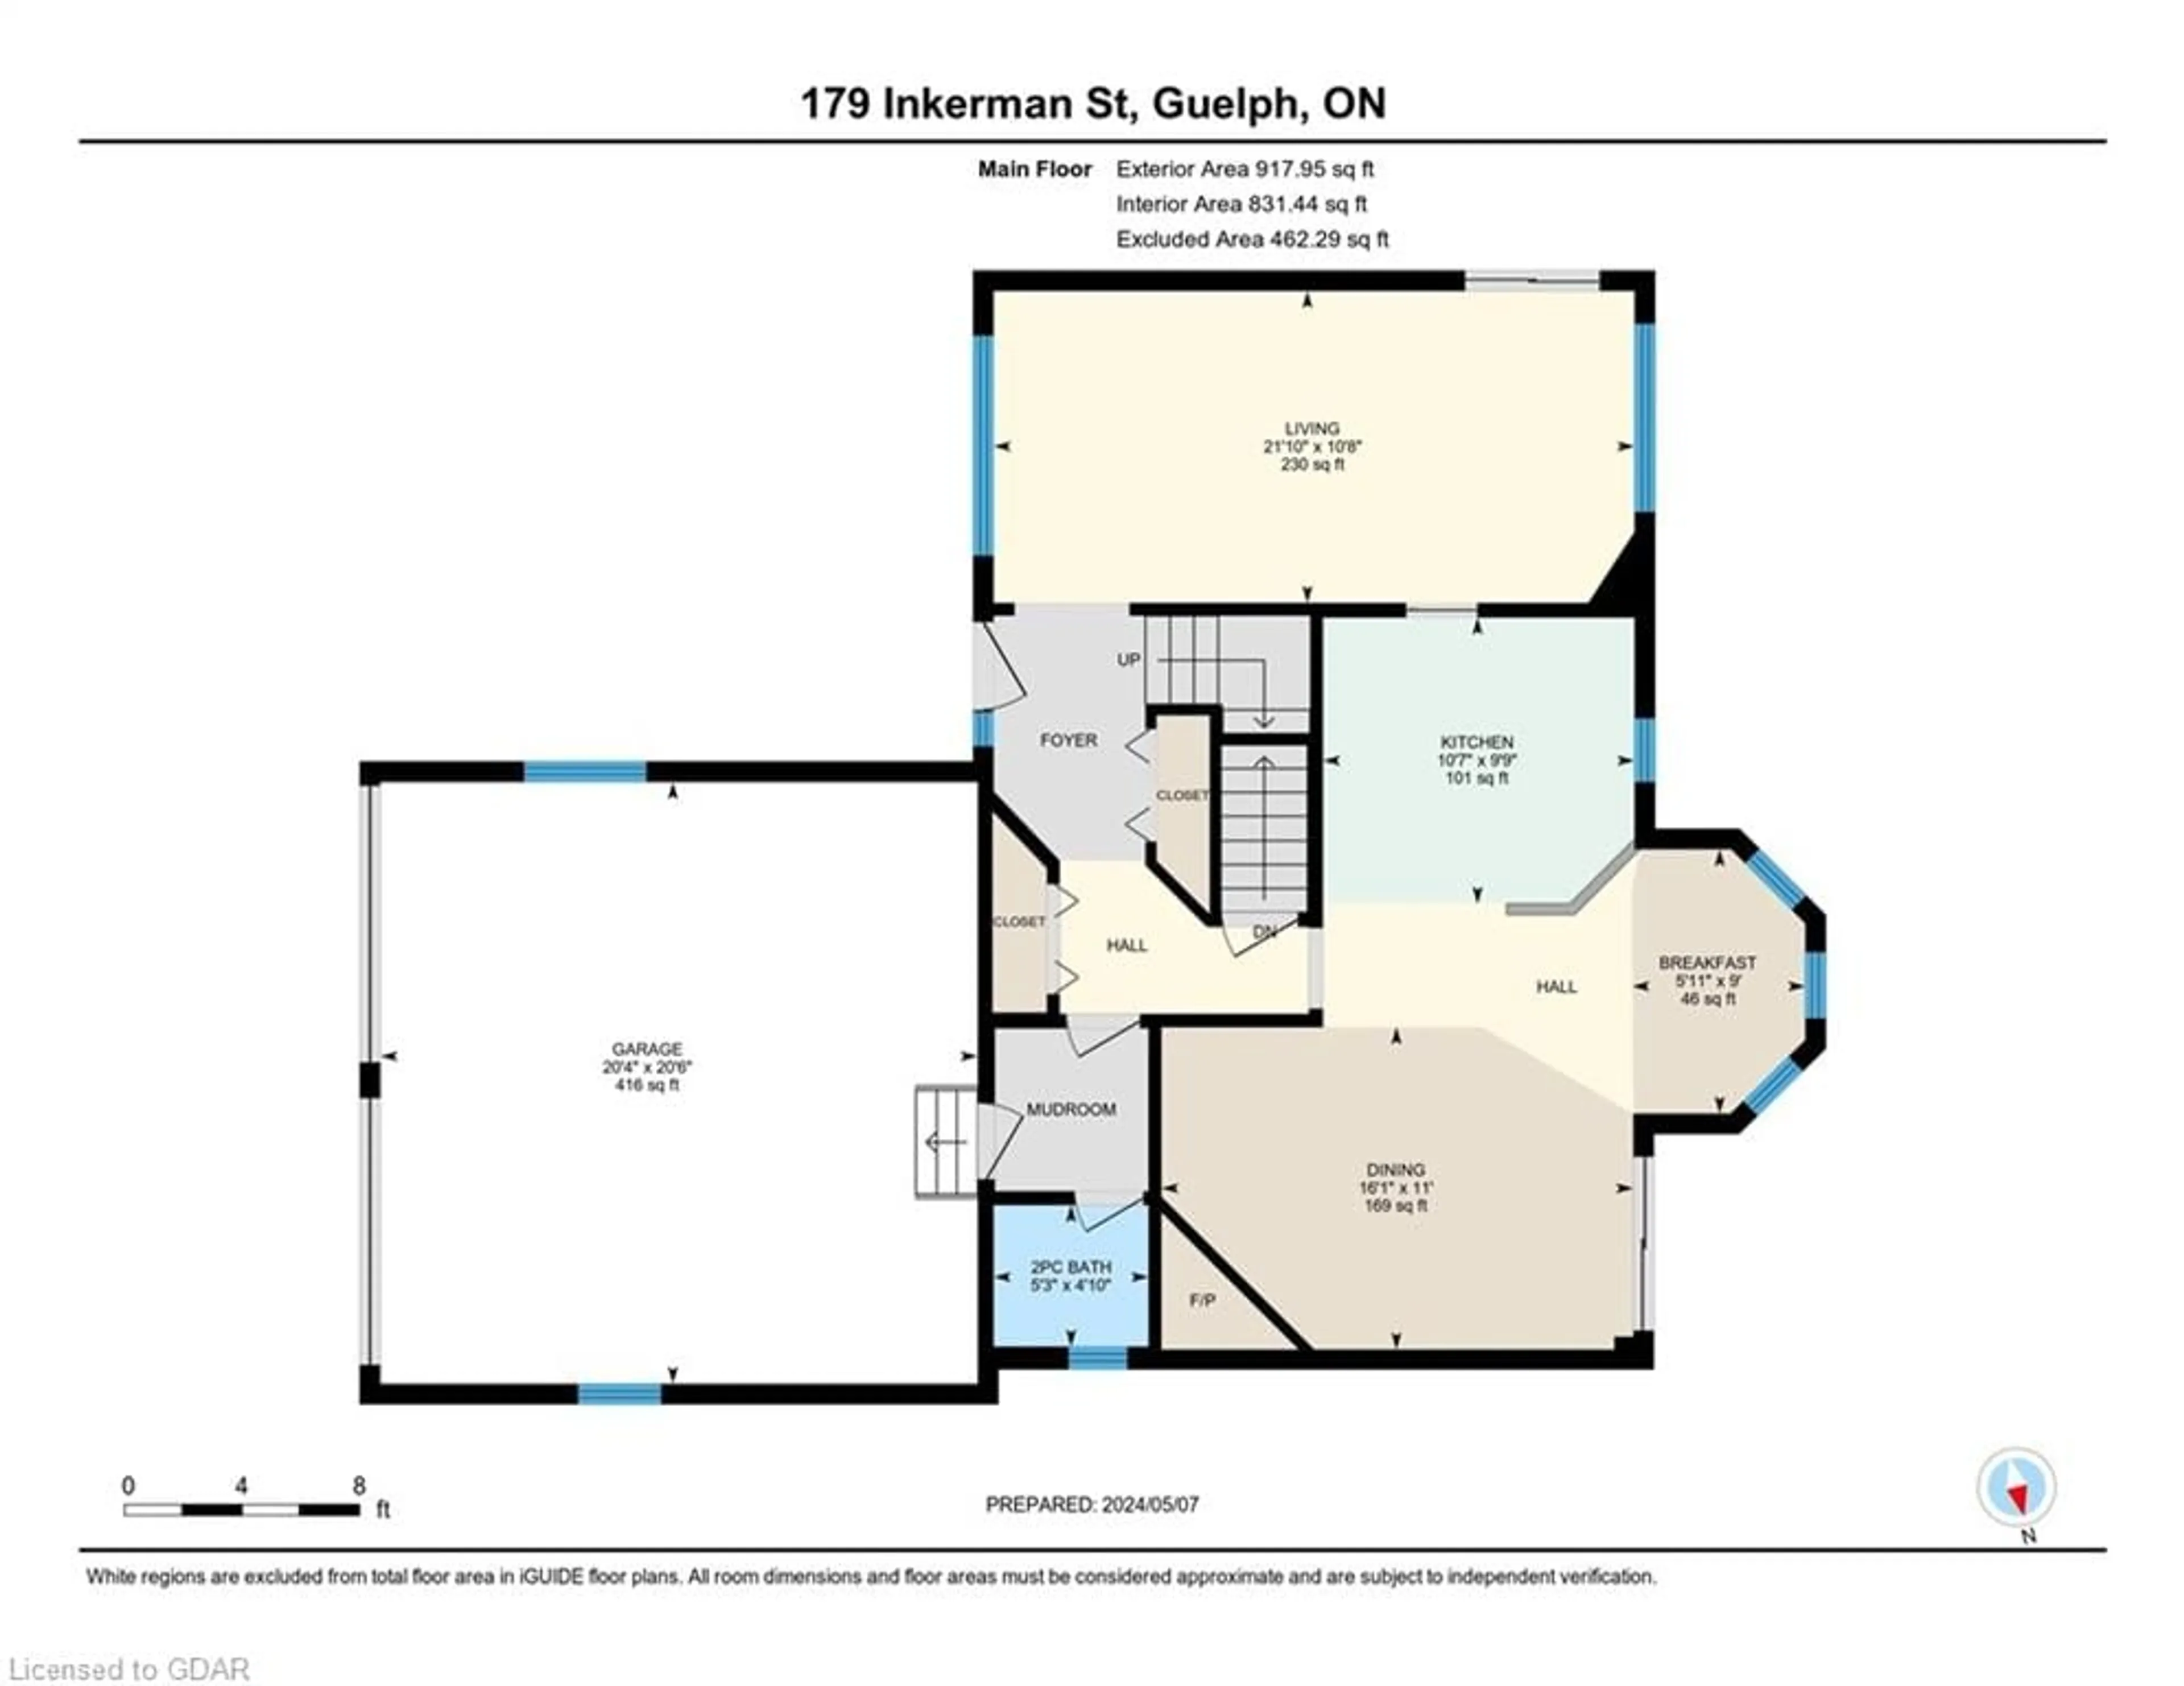 Floor plan for 179 Inkerman St, Guelph Ontario N1H 3E1